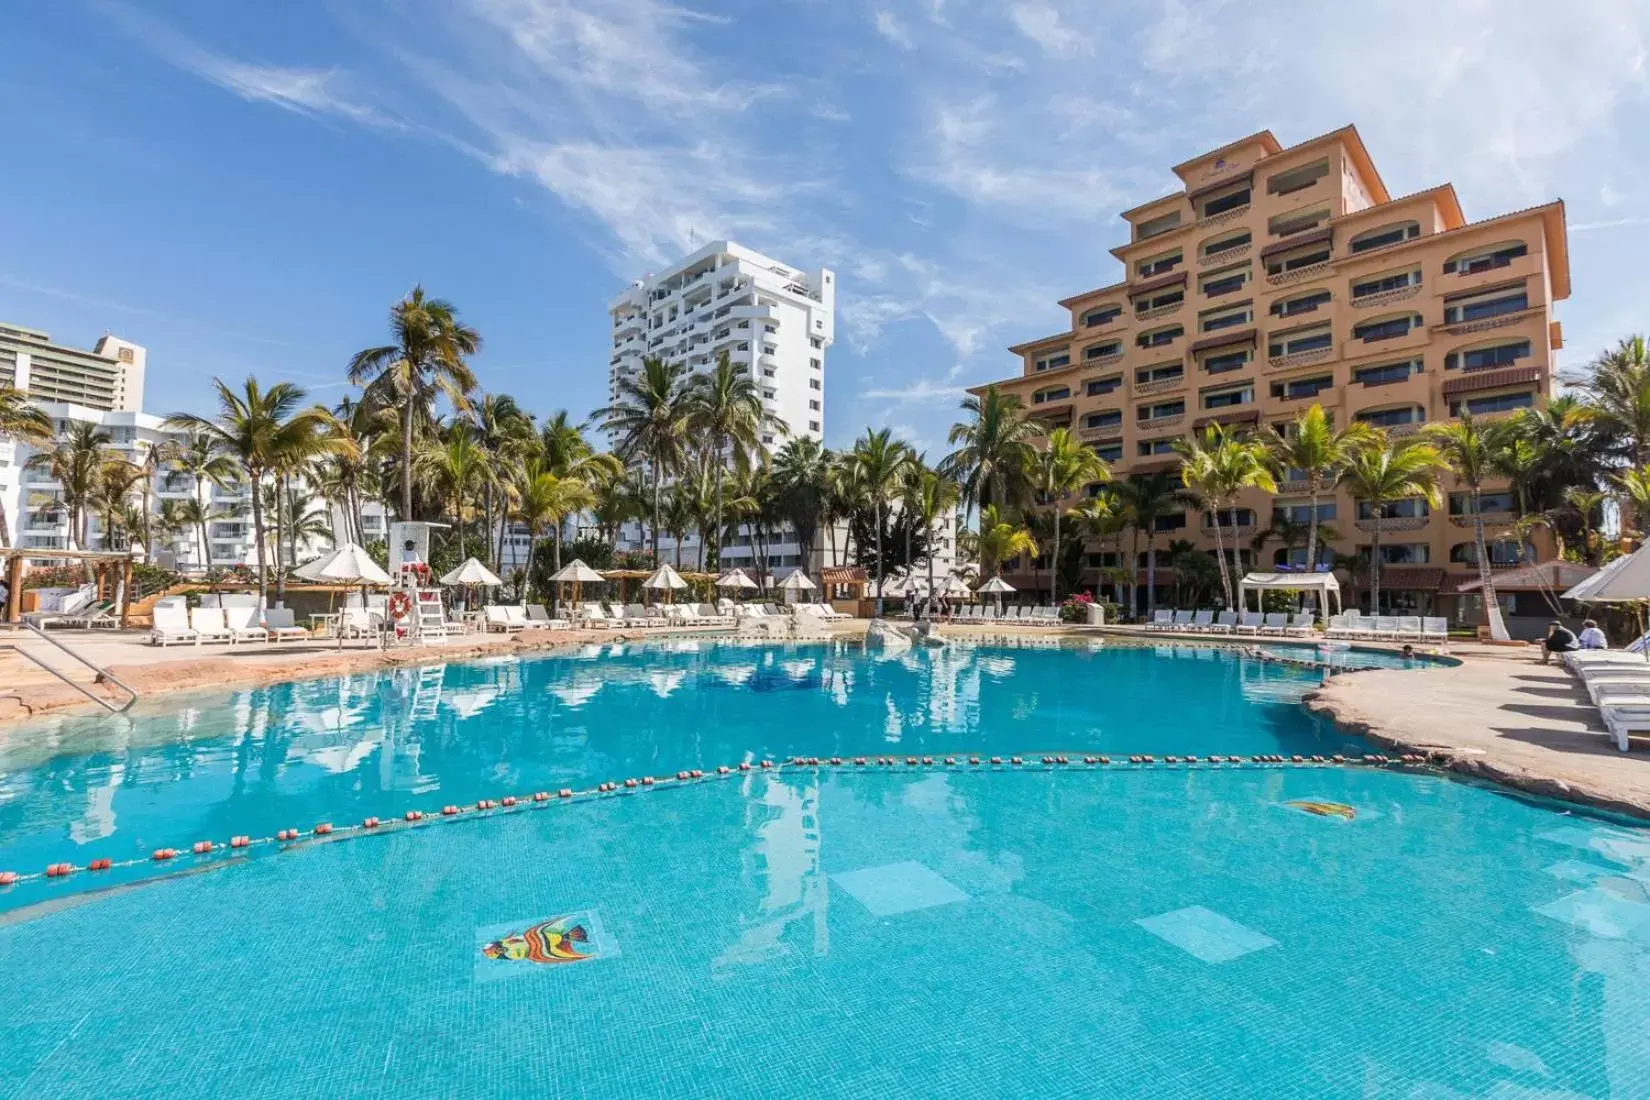 Swimming Pool in Costa de Oro Beach Hotel